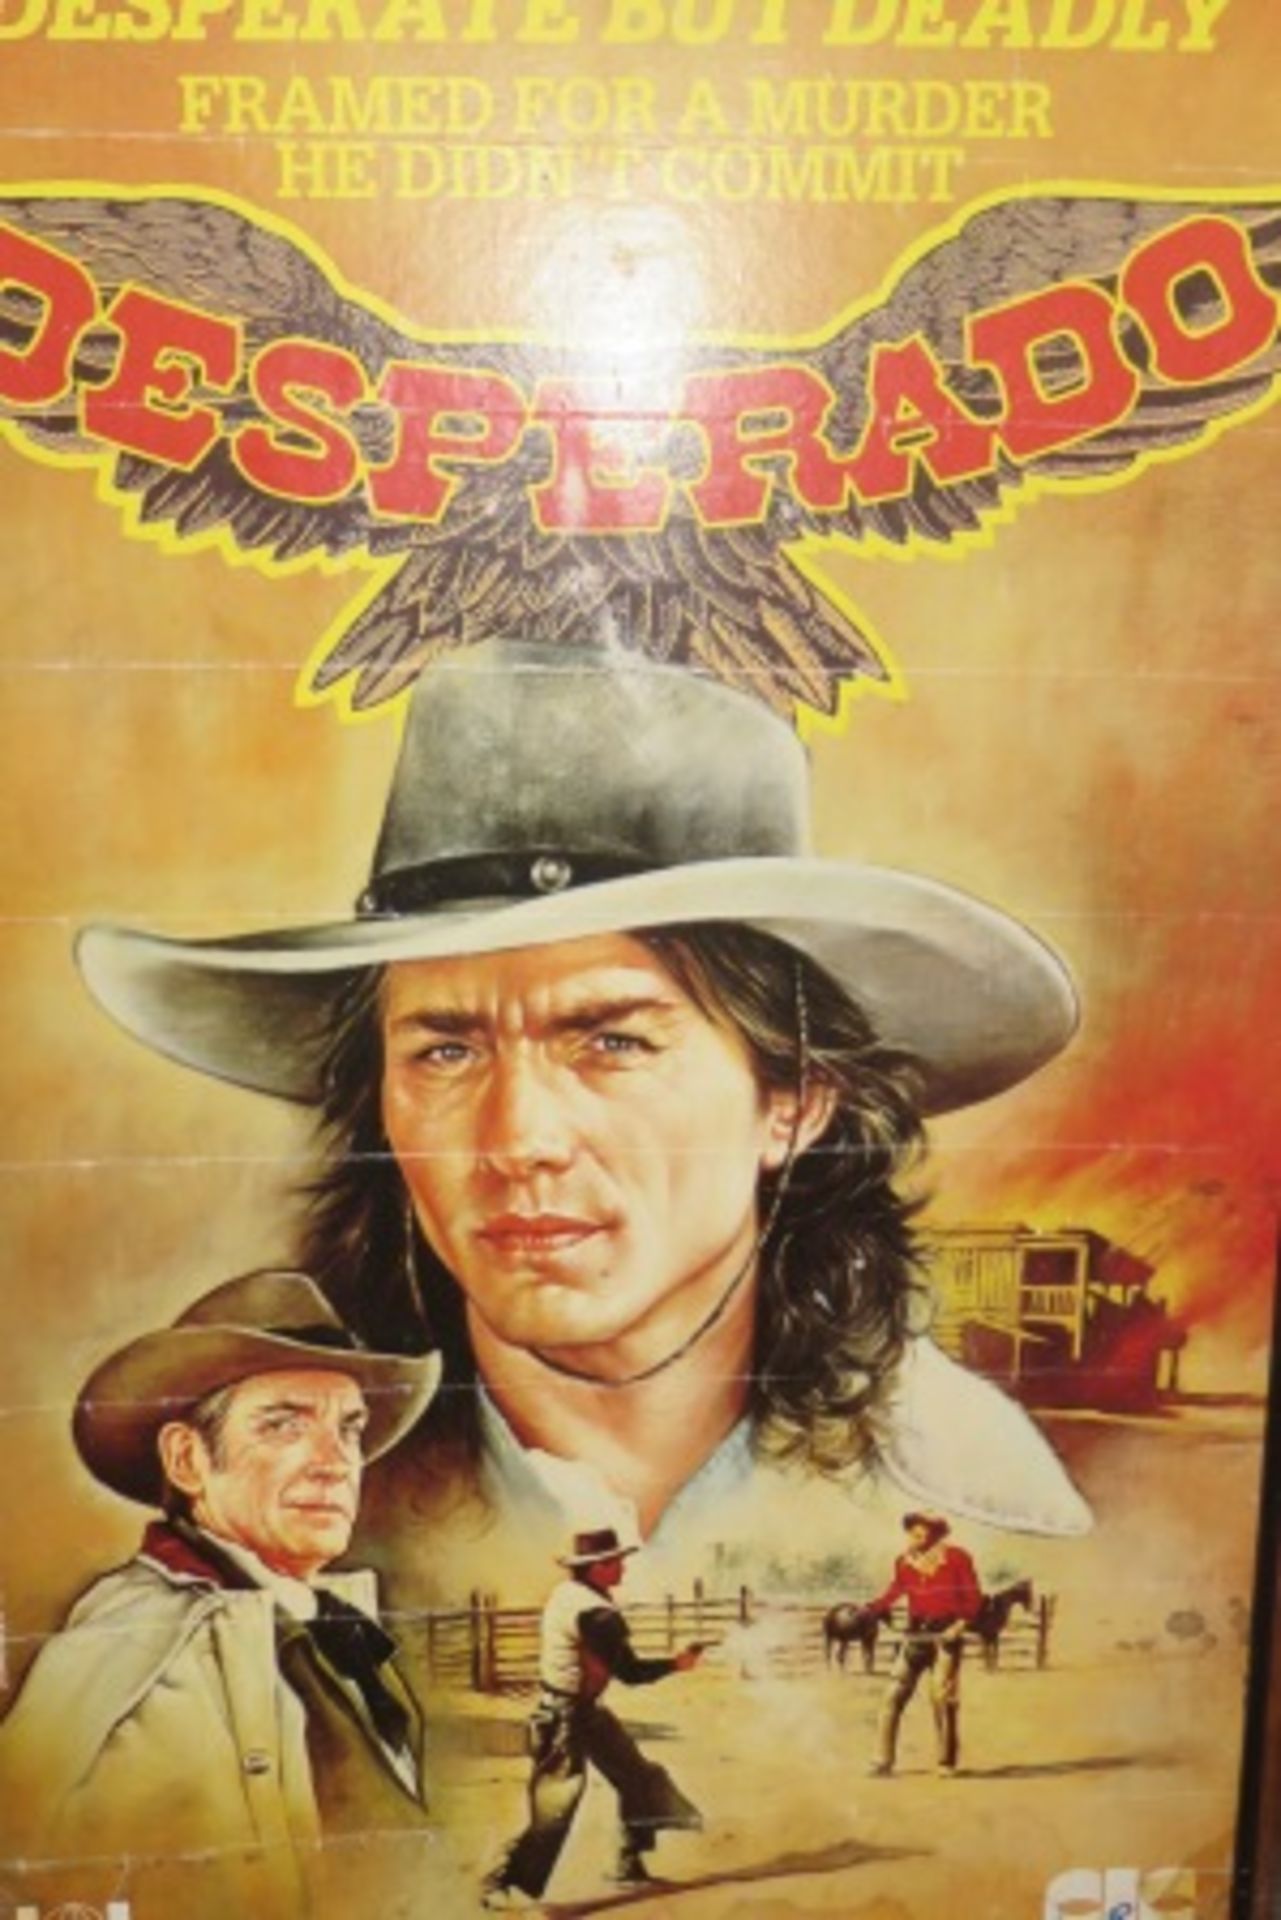 Original 1987 Framed Movie Poster - Desperado